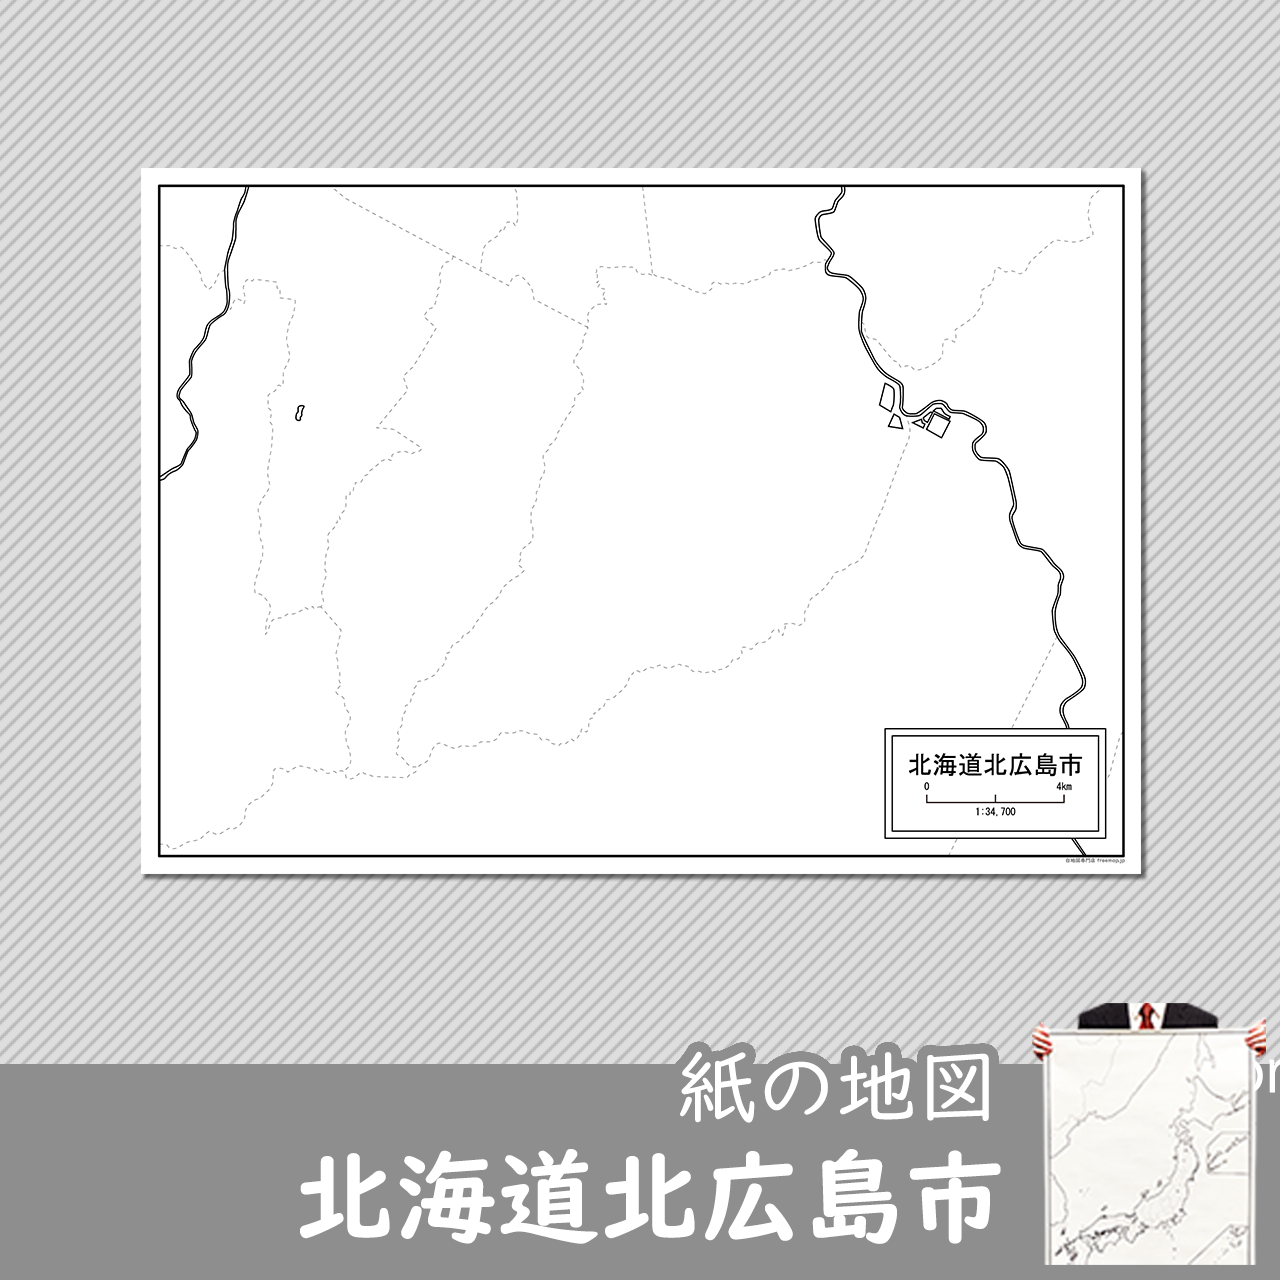 北広島市の紙の白地図のサムネイル